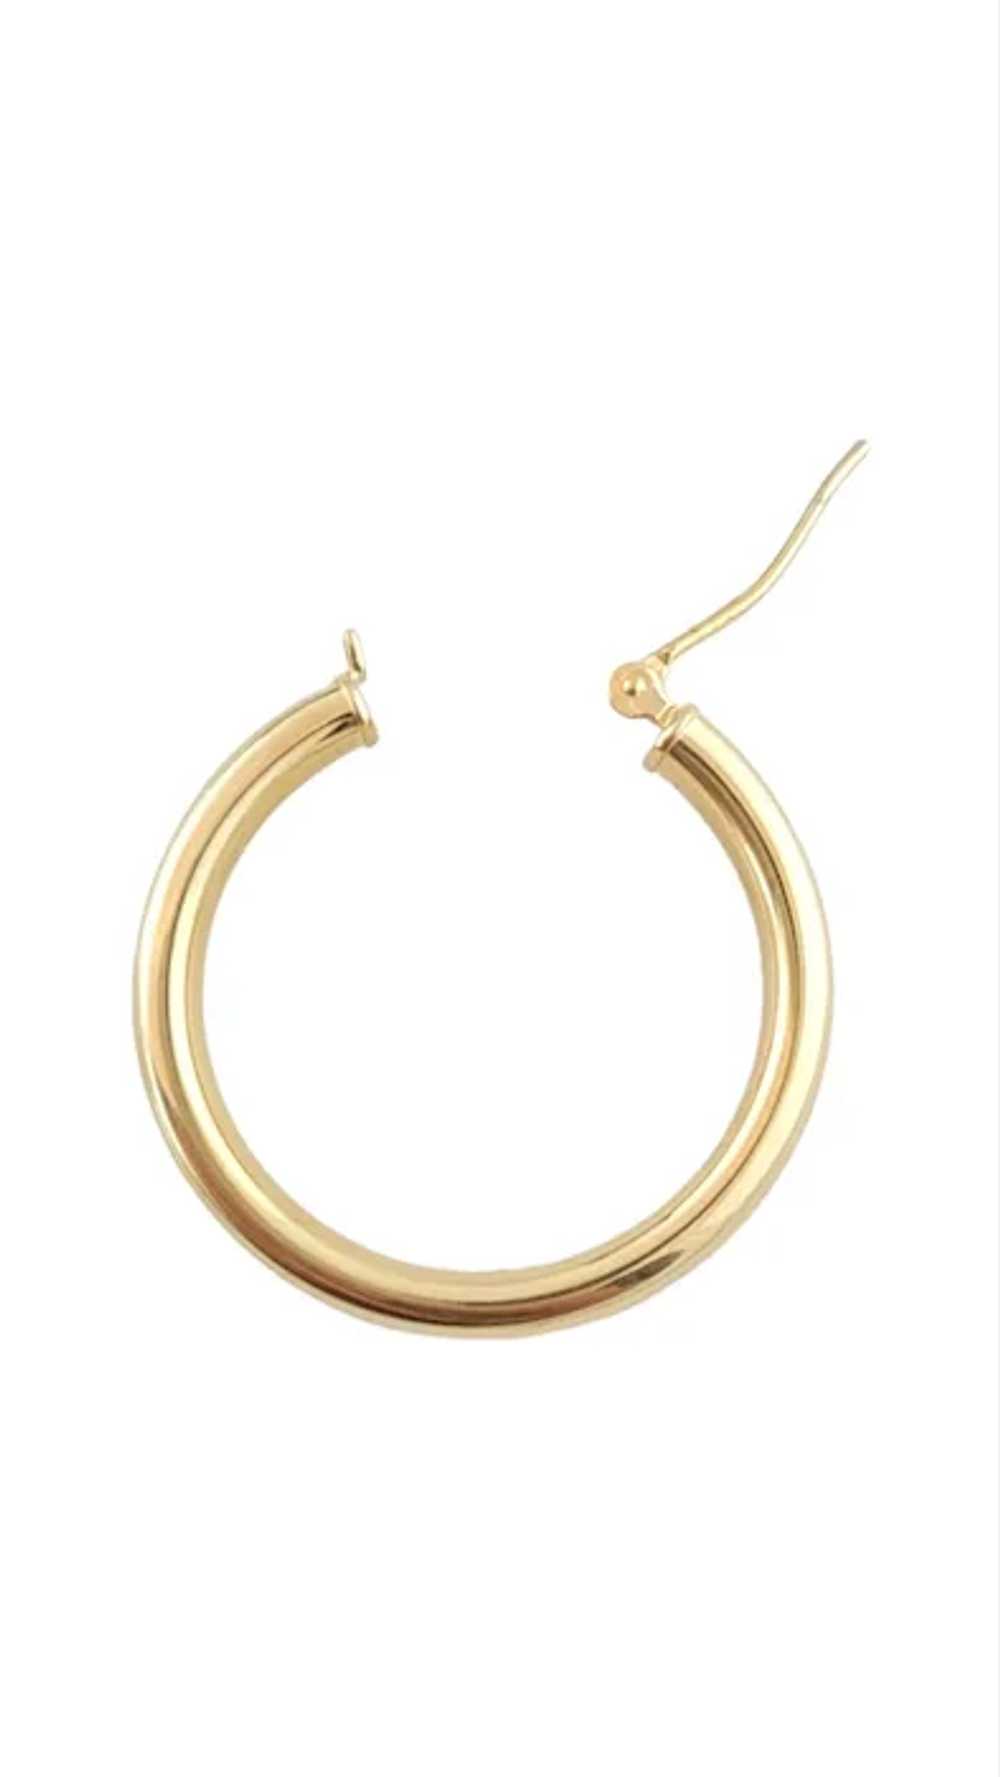 Vintage 14K Yellow Gold Round Hoop Earrings - image 3